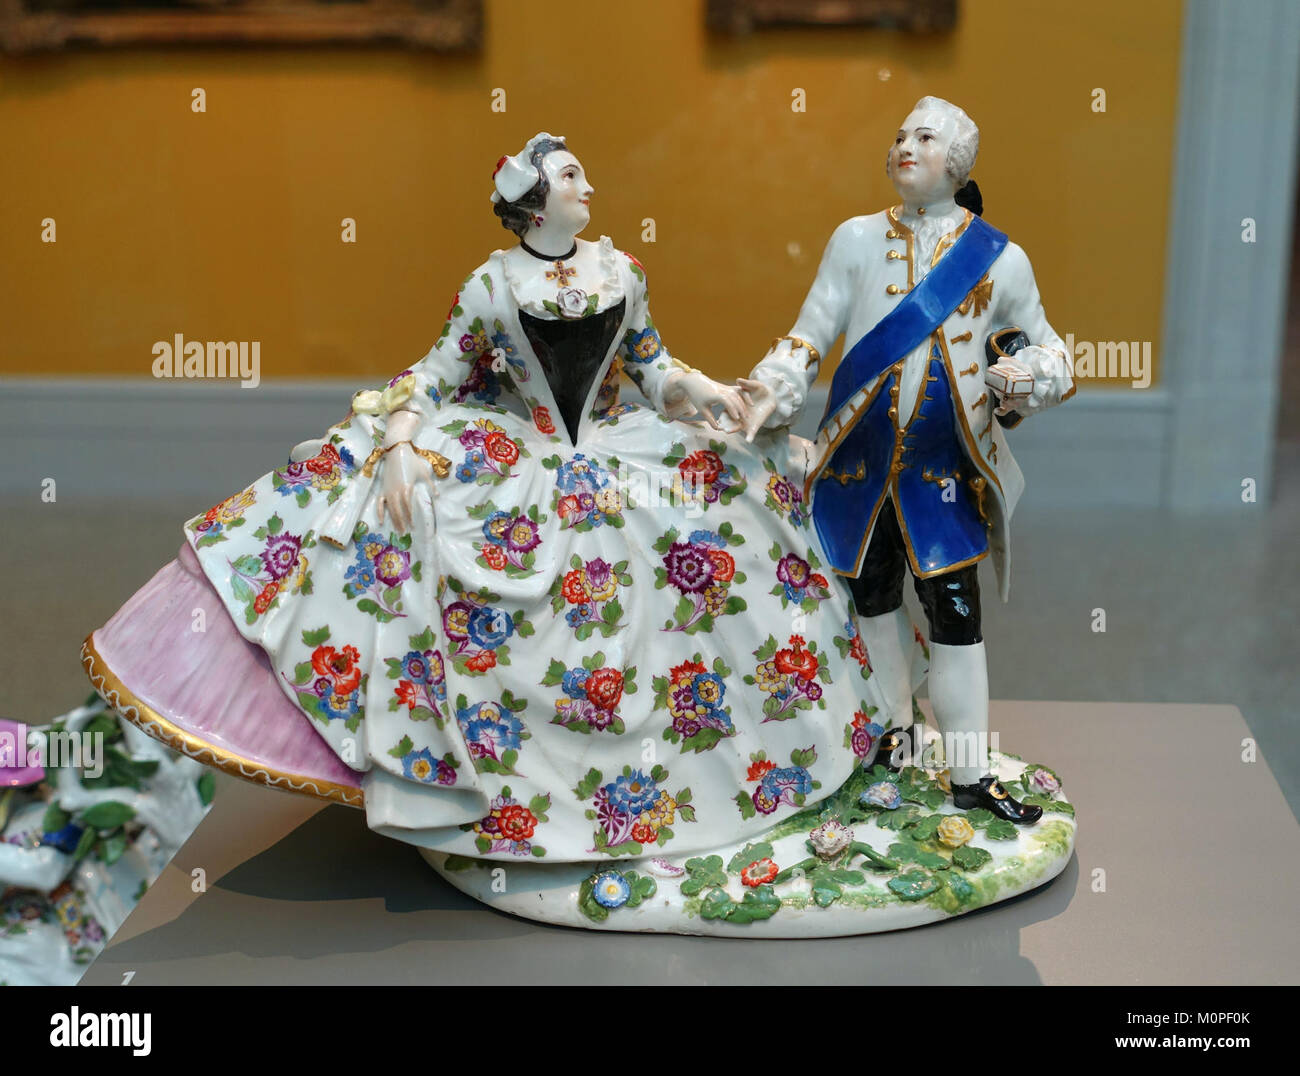 Cavalier et dame, Johann Joachim Kaendler, usine de porcelaine de Meissen, ch. 1745-1750, disque-pâte porcelaine - Wadsworth Atheneum, Hartford, CT - DSC05348 Banque D'Images